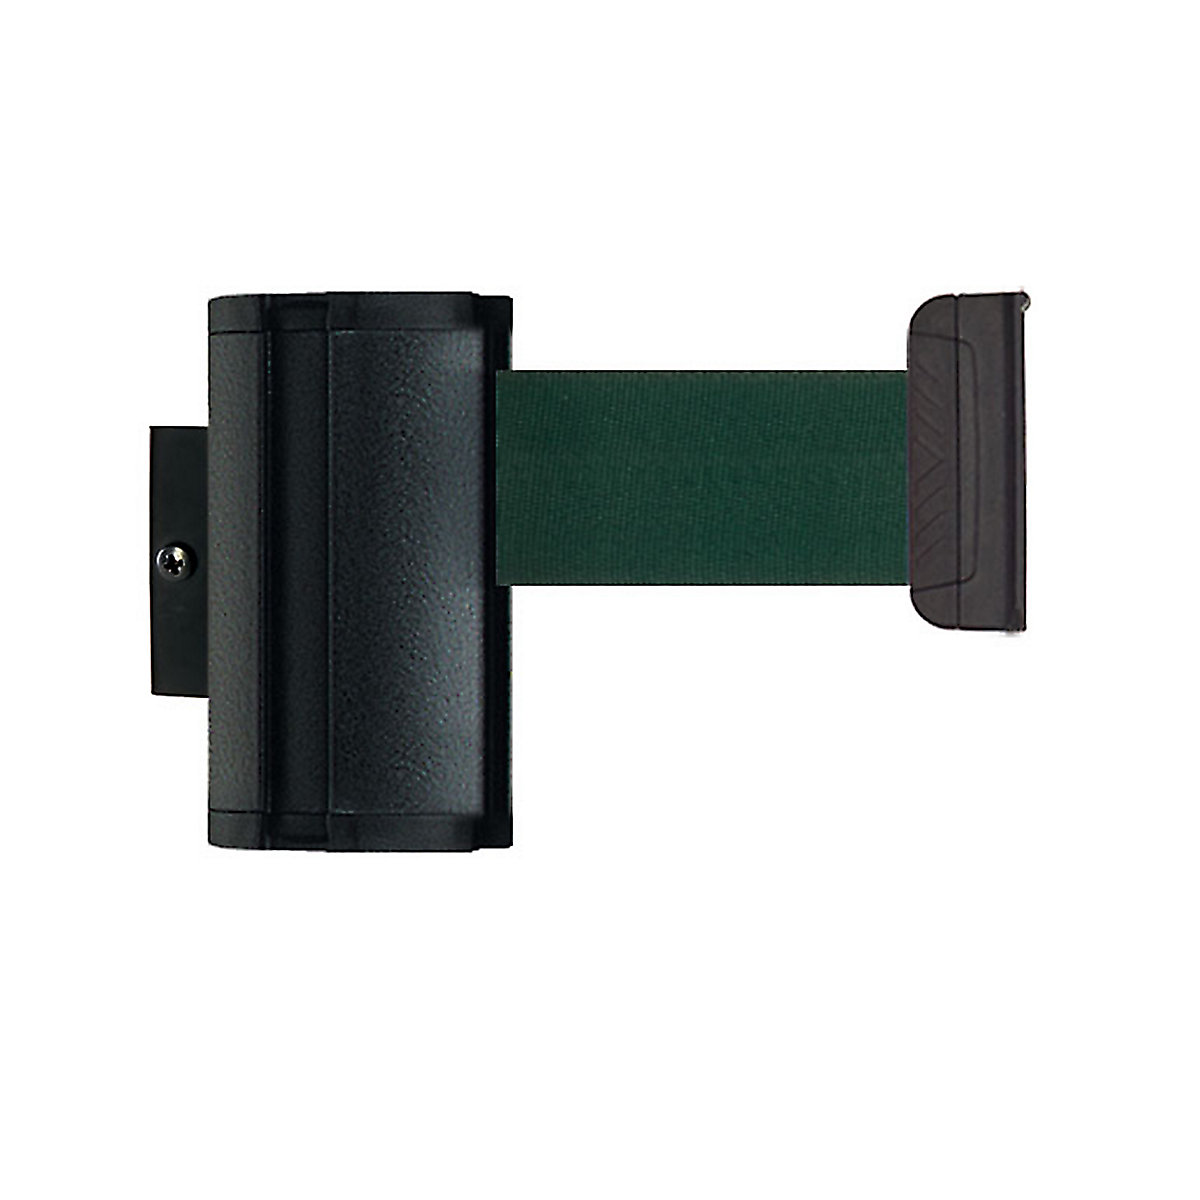 Cassete de cinta Wall Mount, extração máx. da cinta 3700 mm, cor da cinta verde-8